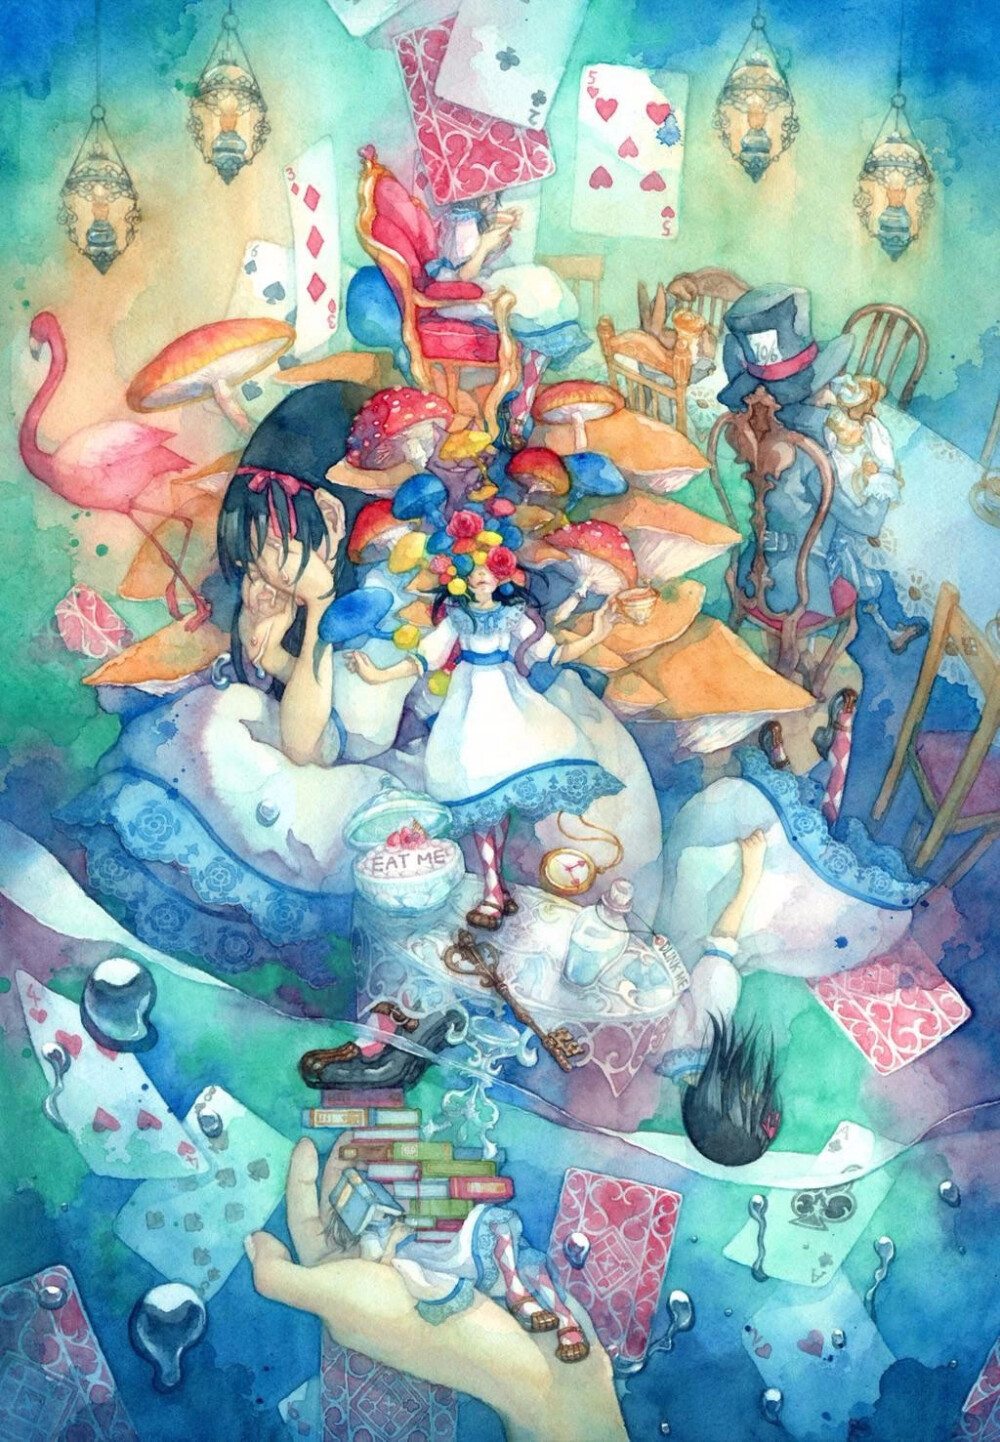 一系列的水彩画作品中,将日本文化的新老元素注入到「 爱丽丝梦游仙境